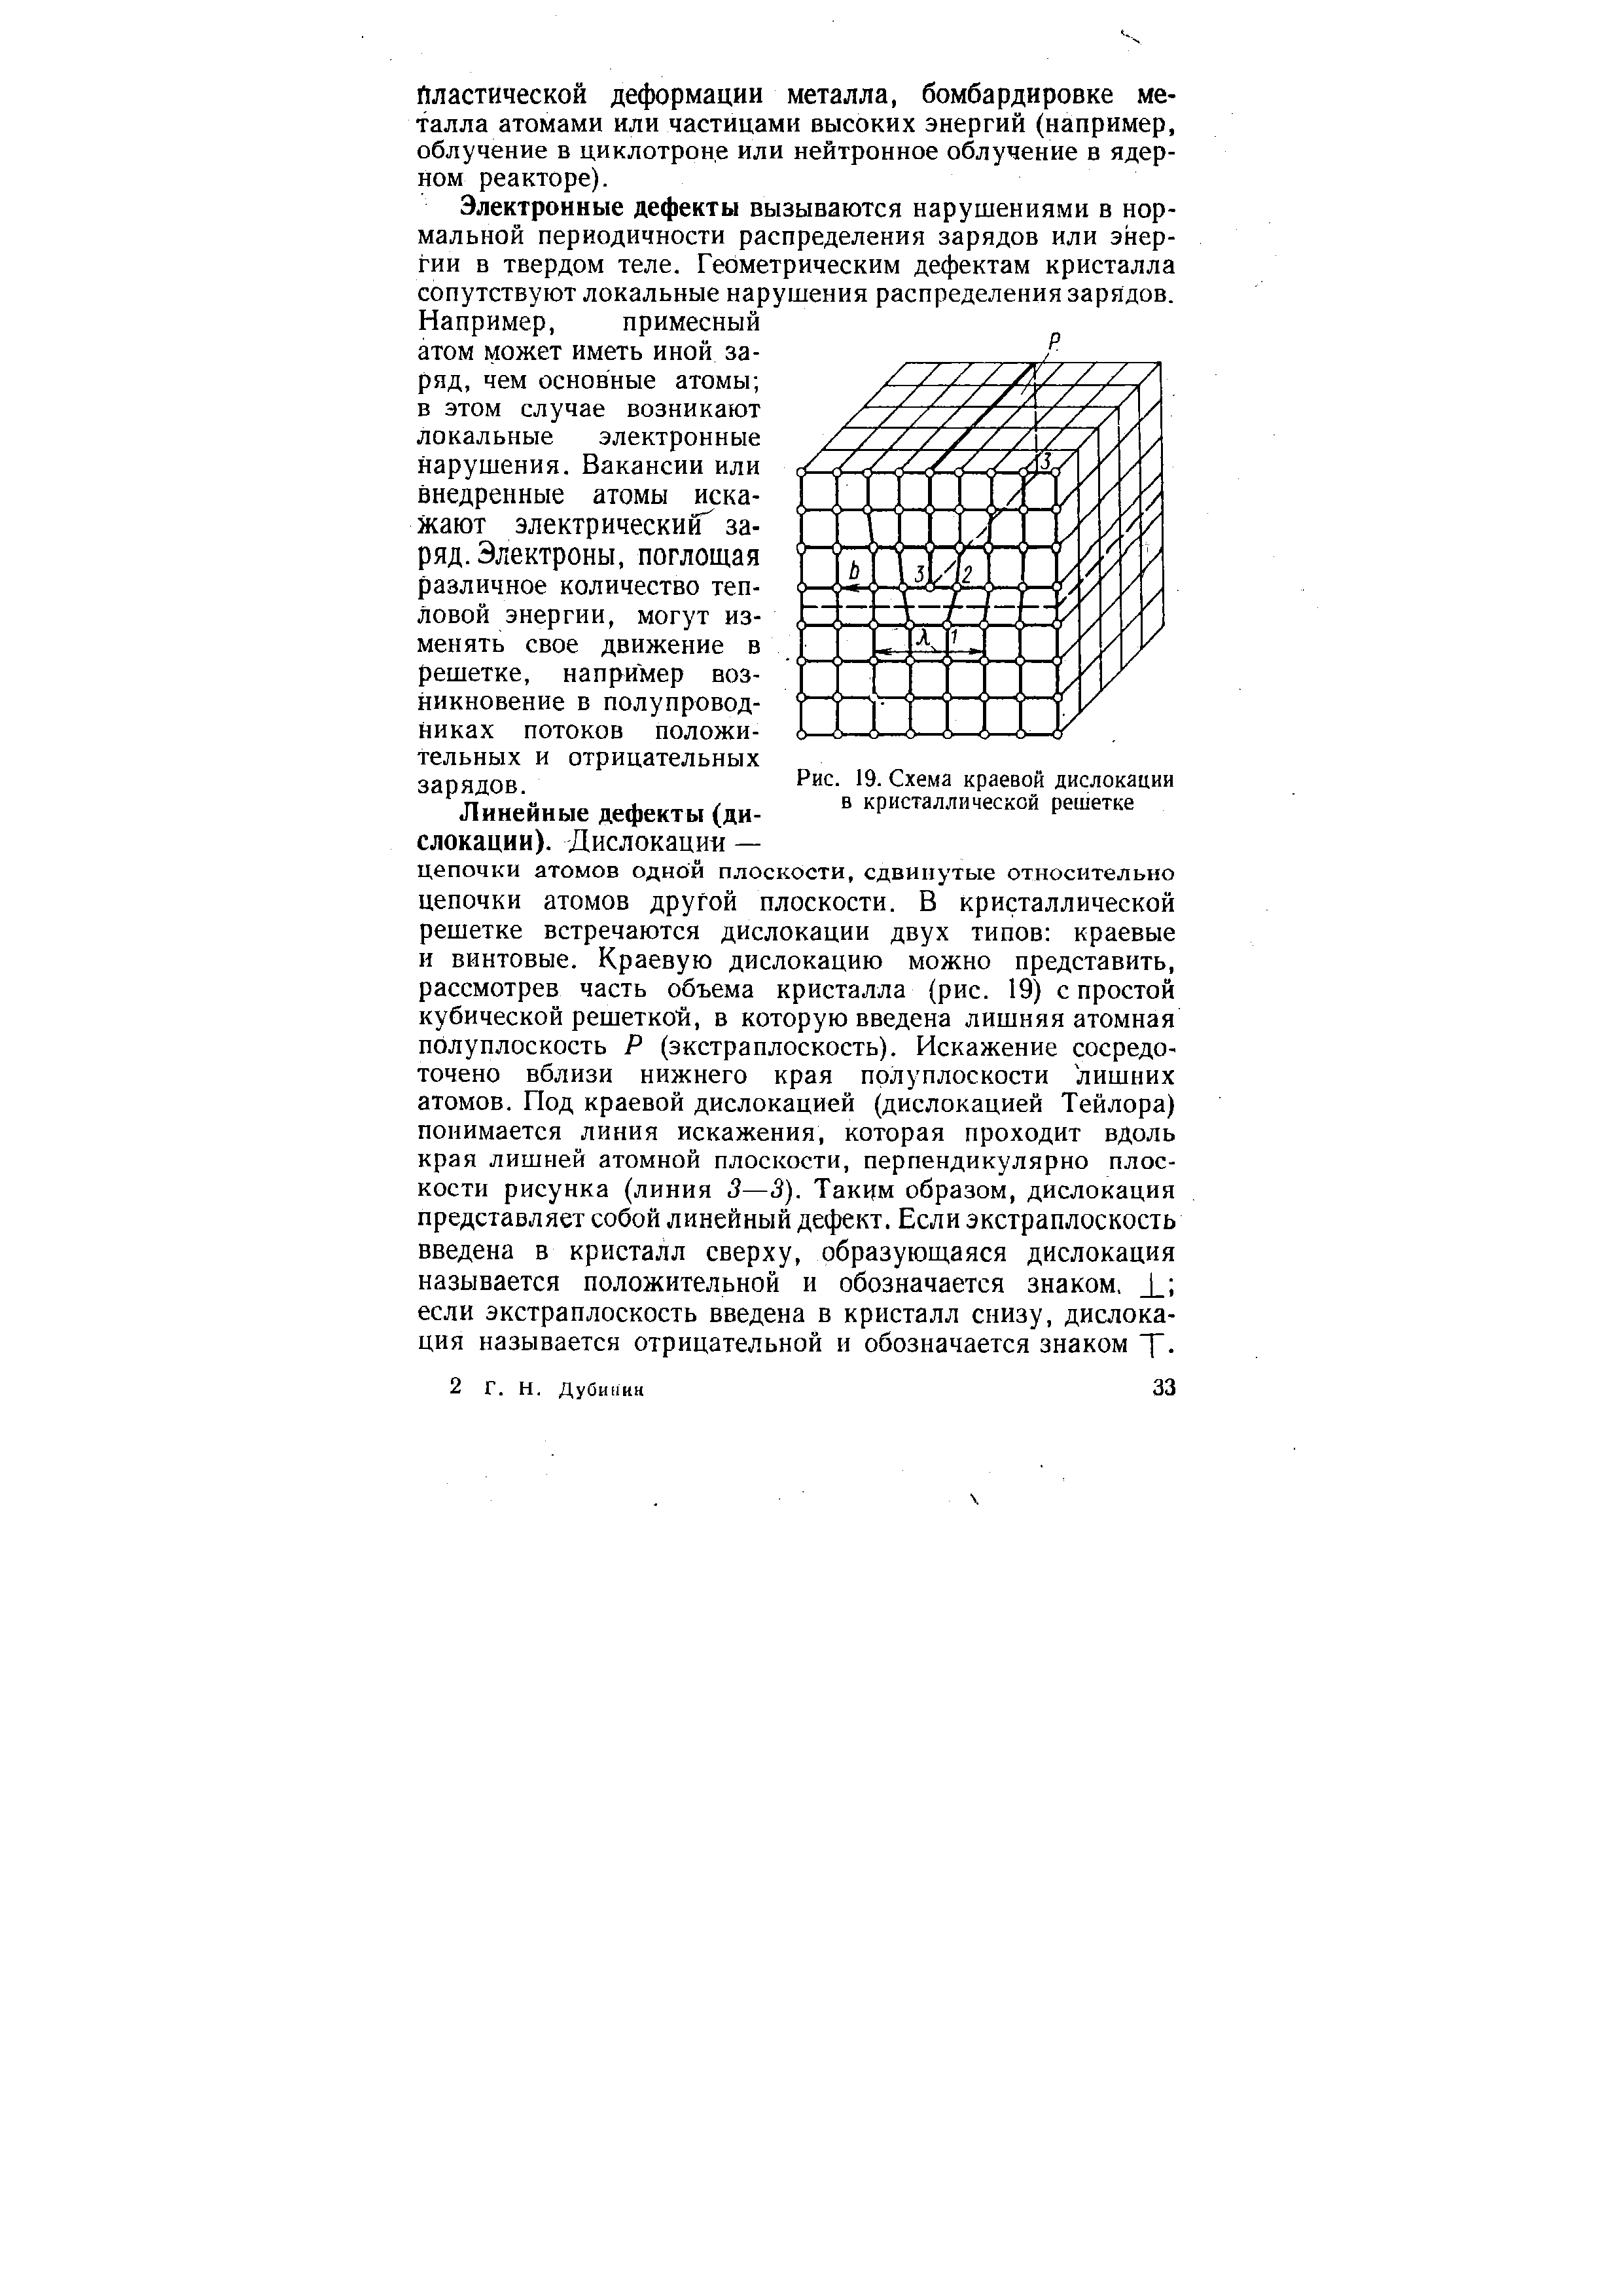 Рис. 19. Схема <a href="/info/1495">краевой дислокации</a> в кристаллической решетке
